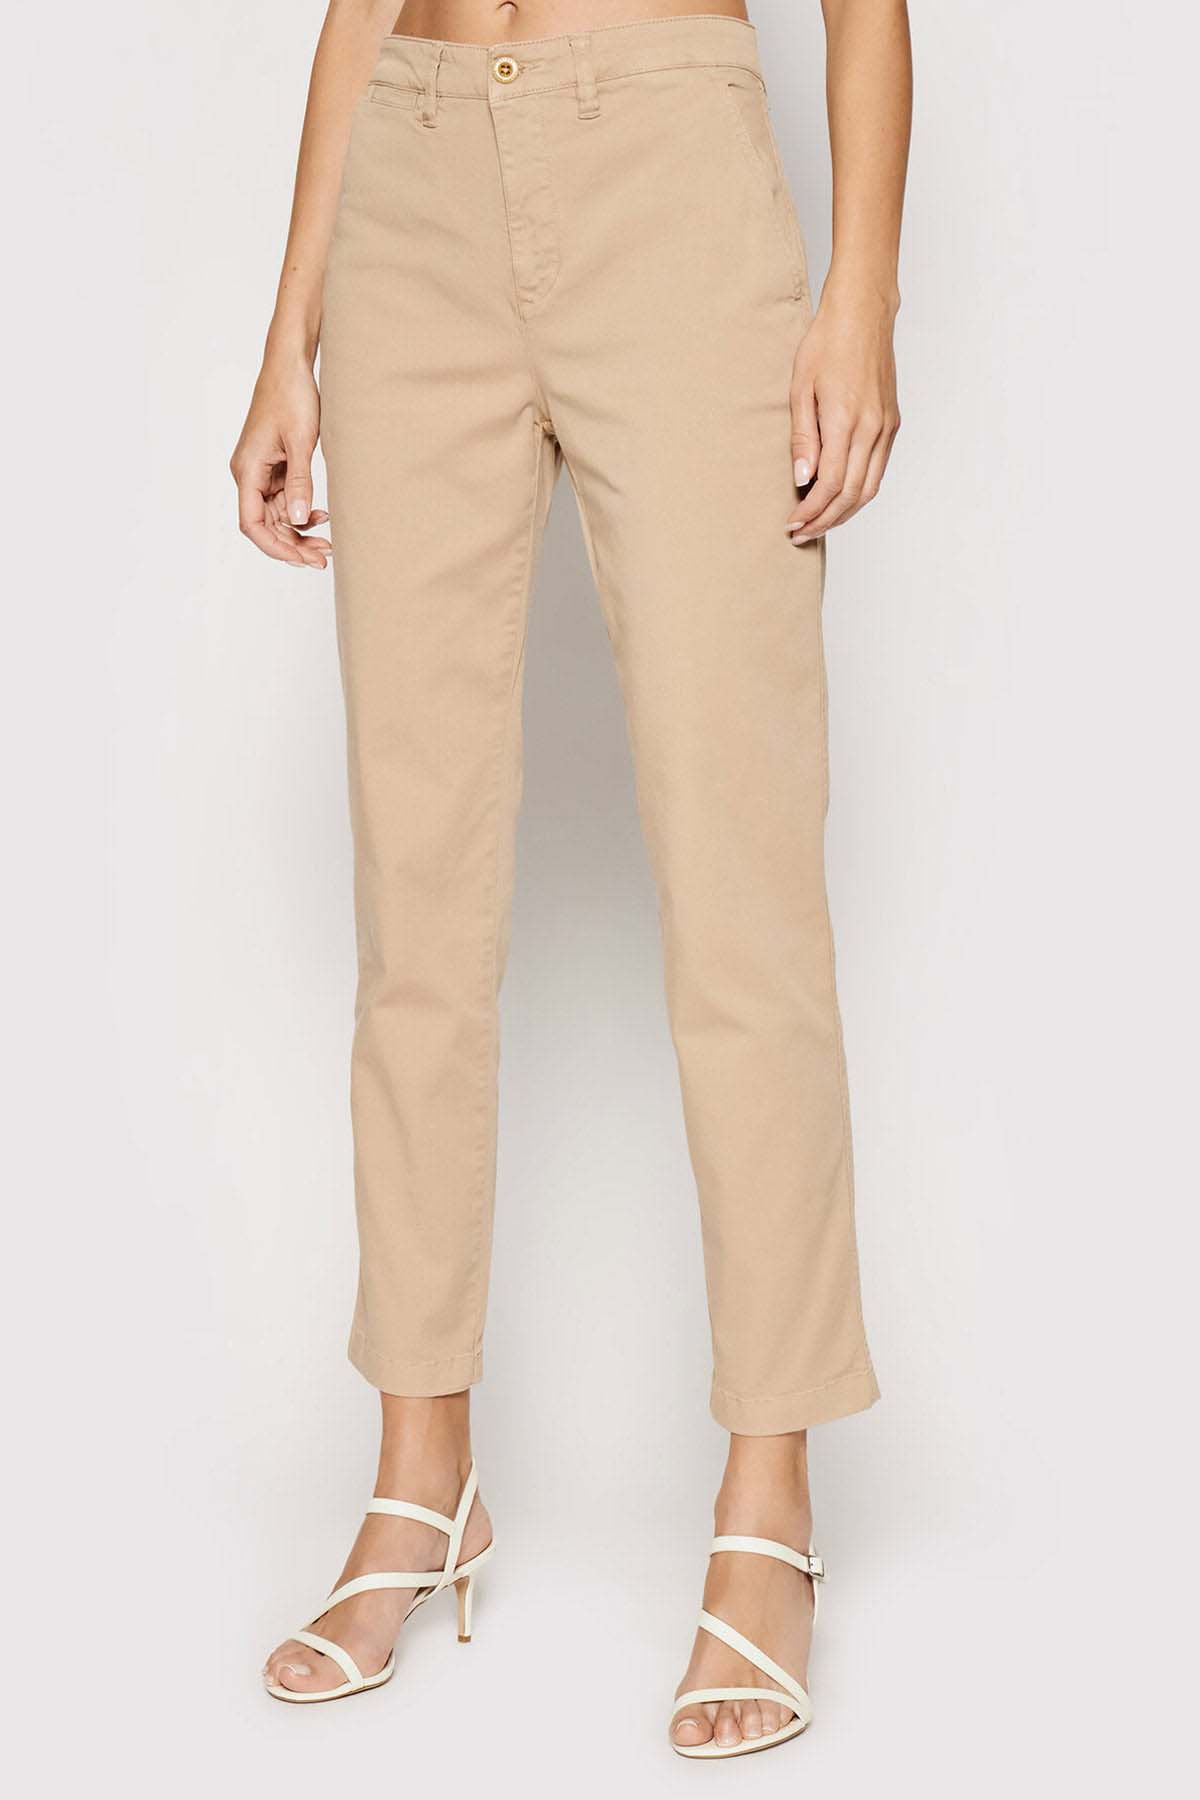 Polo Ralph Lauren Yandan Cepli Streç Pantolon-Libas Trendy Fashion Store